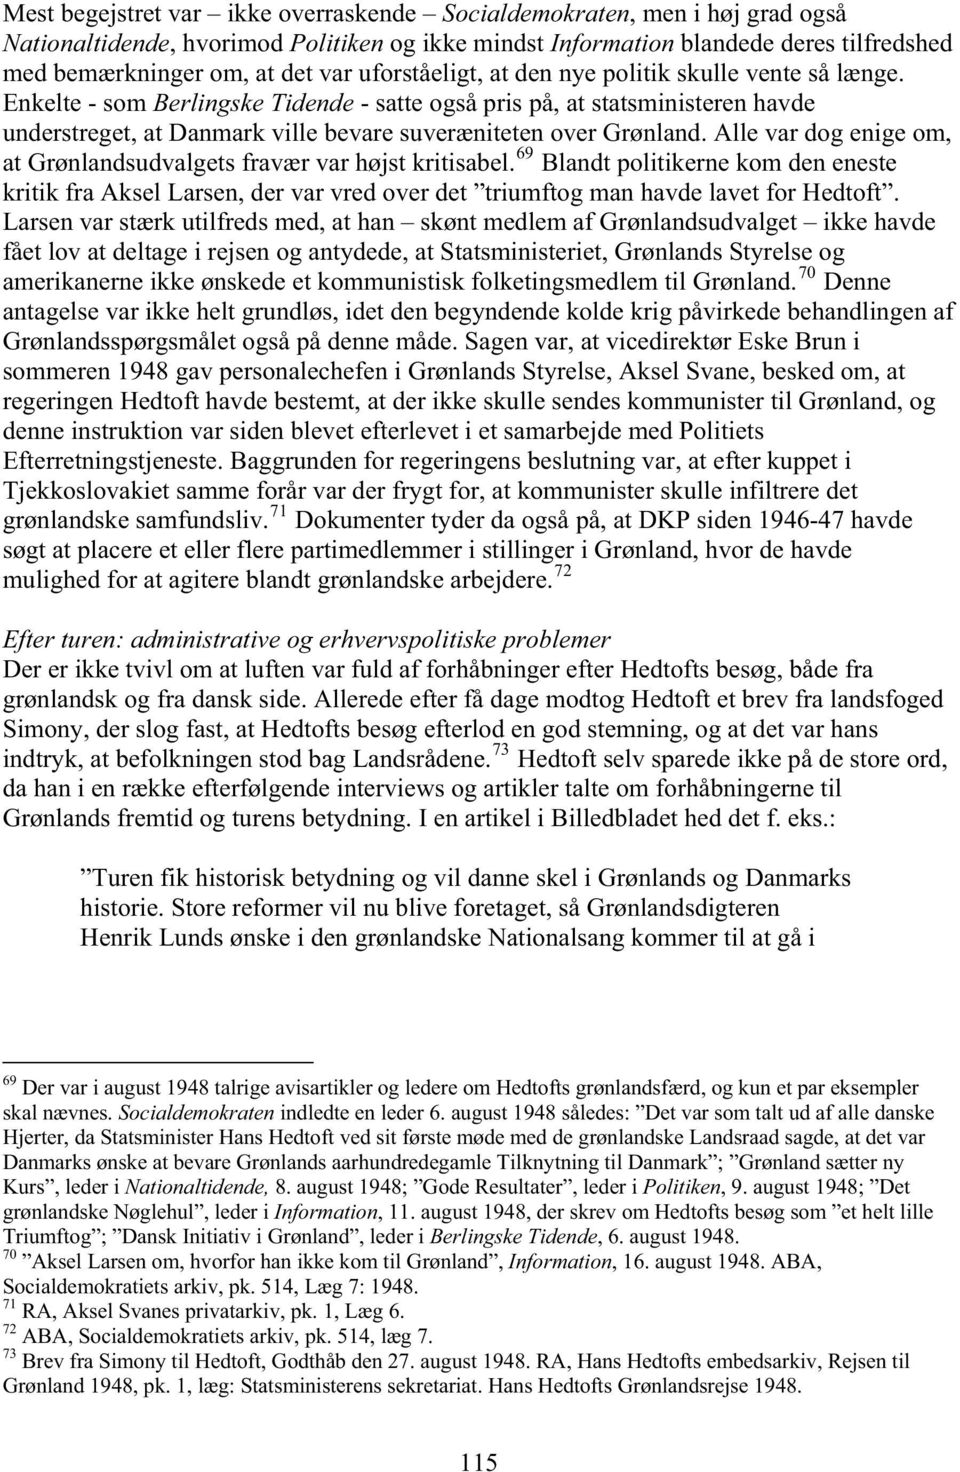 Enkelte - som Berlingske Tidende - satte også pris på, at statsministeren havde understreget, at Danmark ville bevare suveræniteten over Grønland.